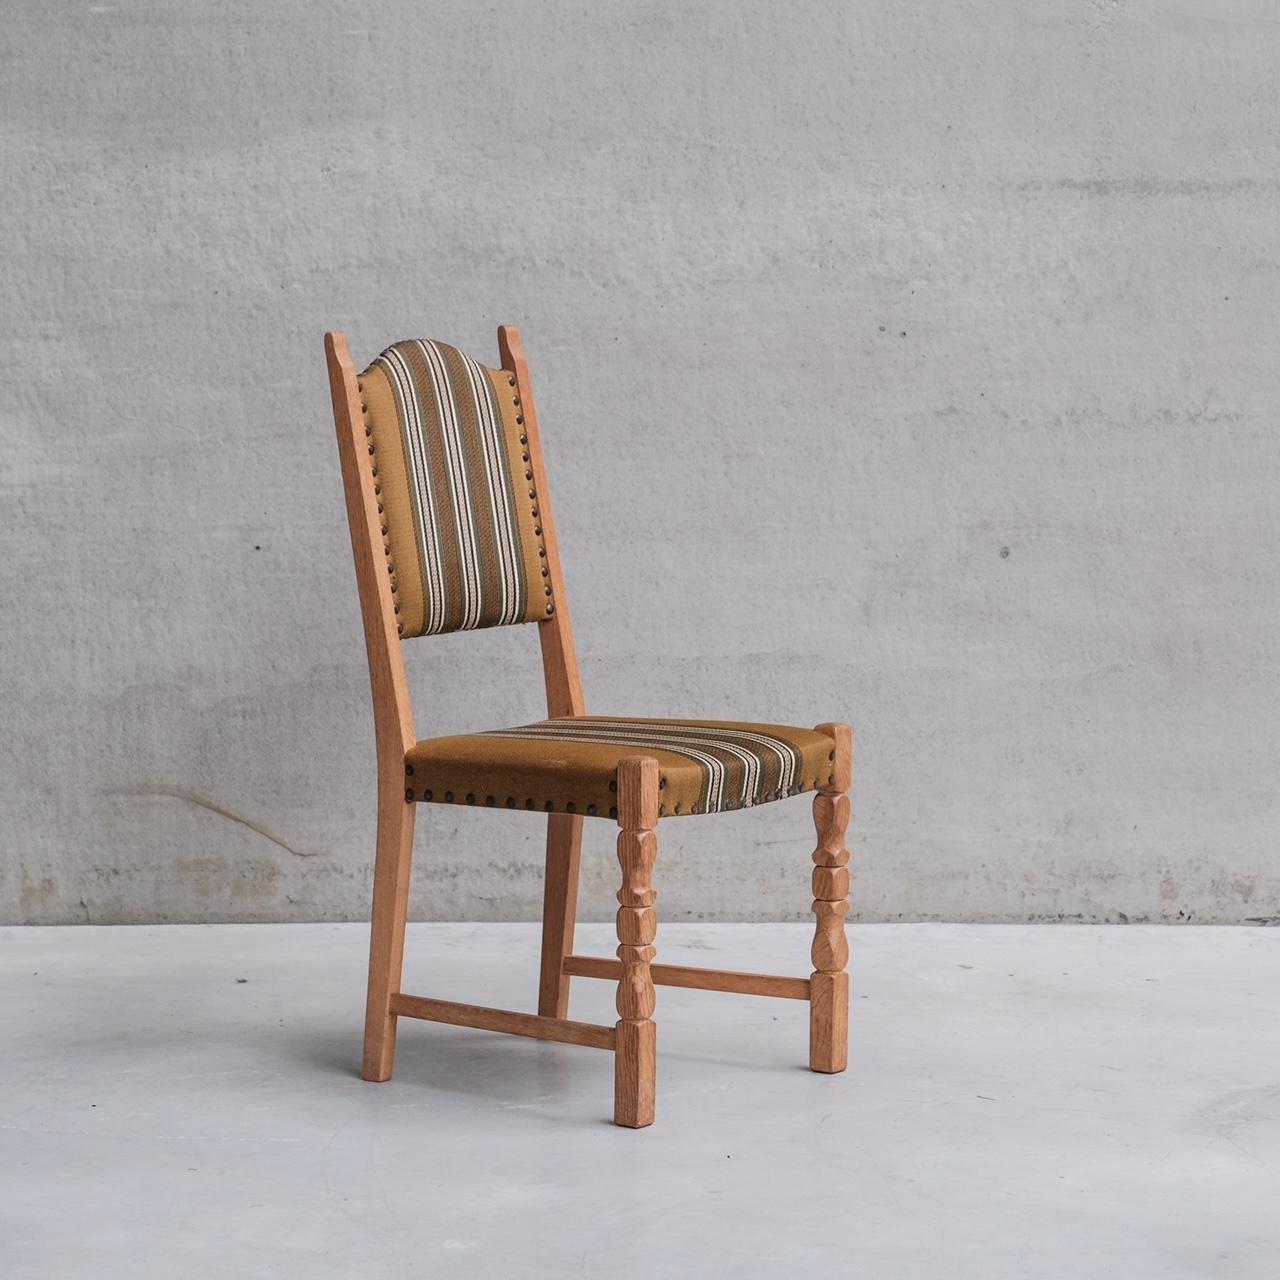 Ensemble de six chaises de salle à manger rembourrées.

Danemark, années 1960.

Le prix est celui de l'ensemble.

La tapisserie d'origine a été conservée et reste en relativement bon état, bien qu'elle présente des signes de vieillissement. Nous